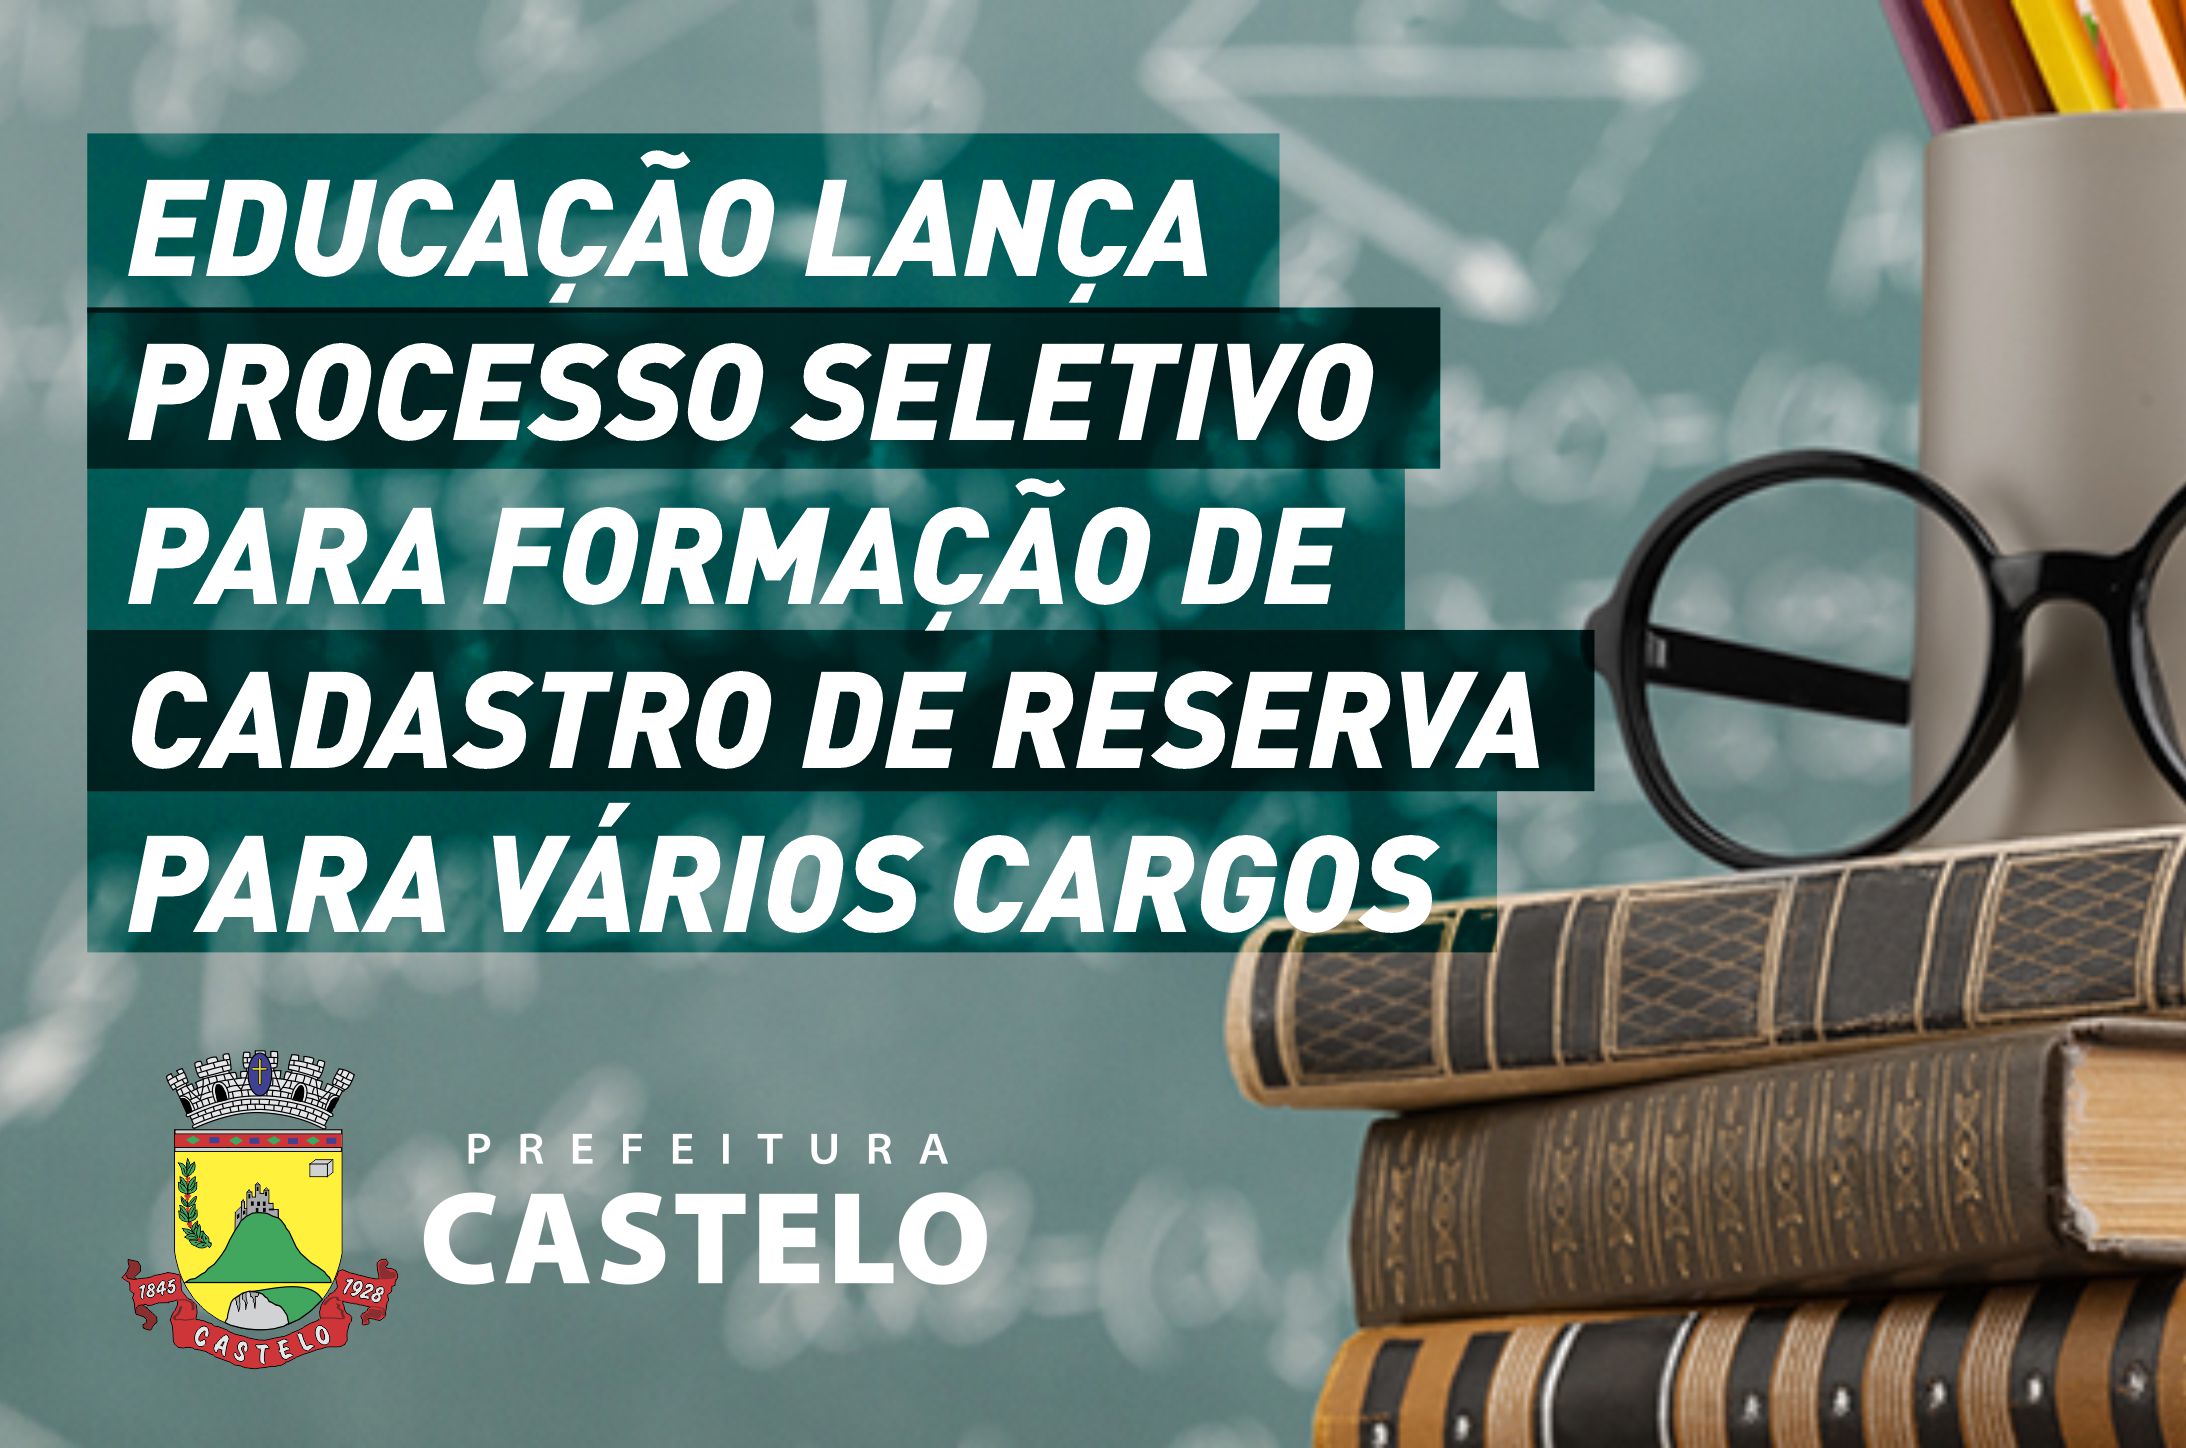 EDUCAÇÃO LANÇA PROCESSO SELETIVO PARA FORMAÇÃO DE CADASTRO DE RESERVA PARA VÁRIOS CARGOS